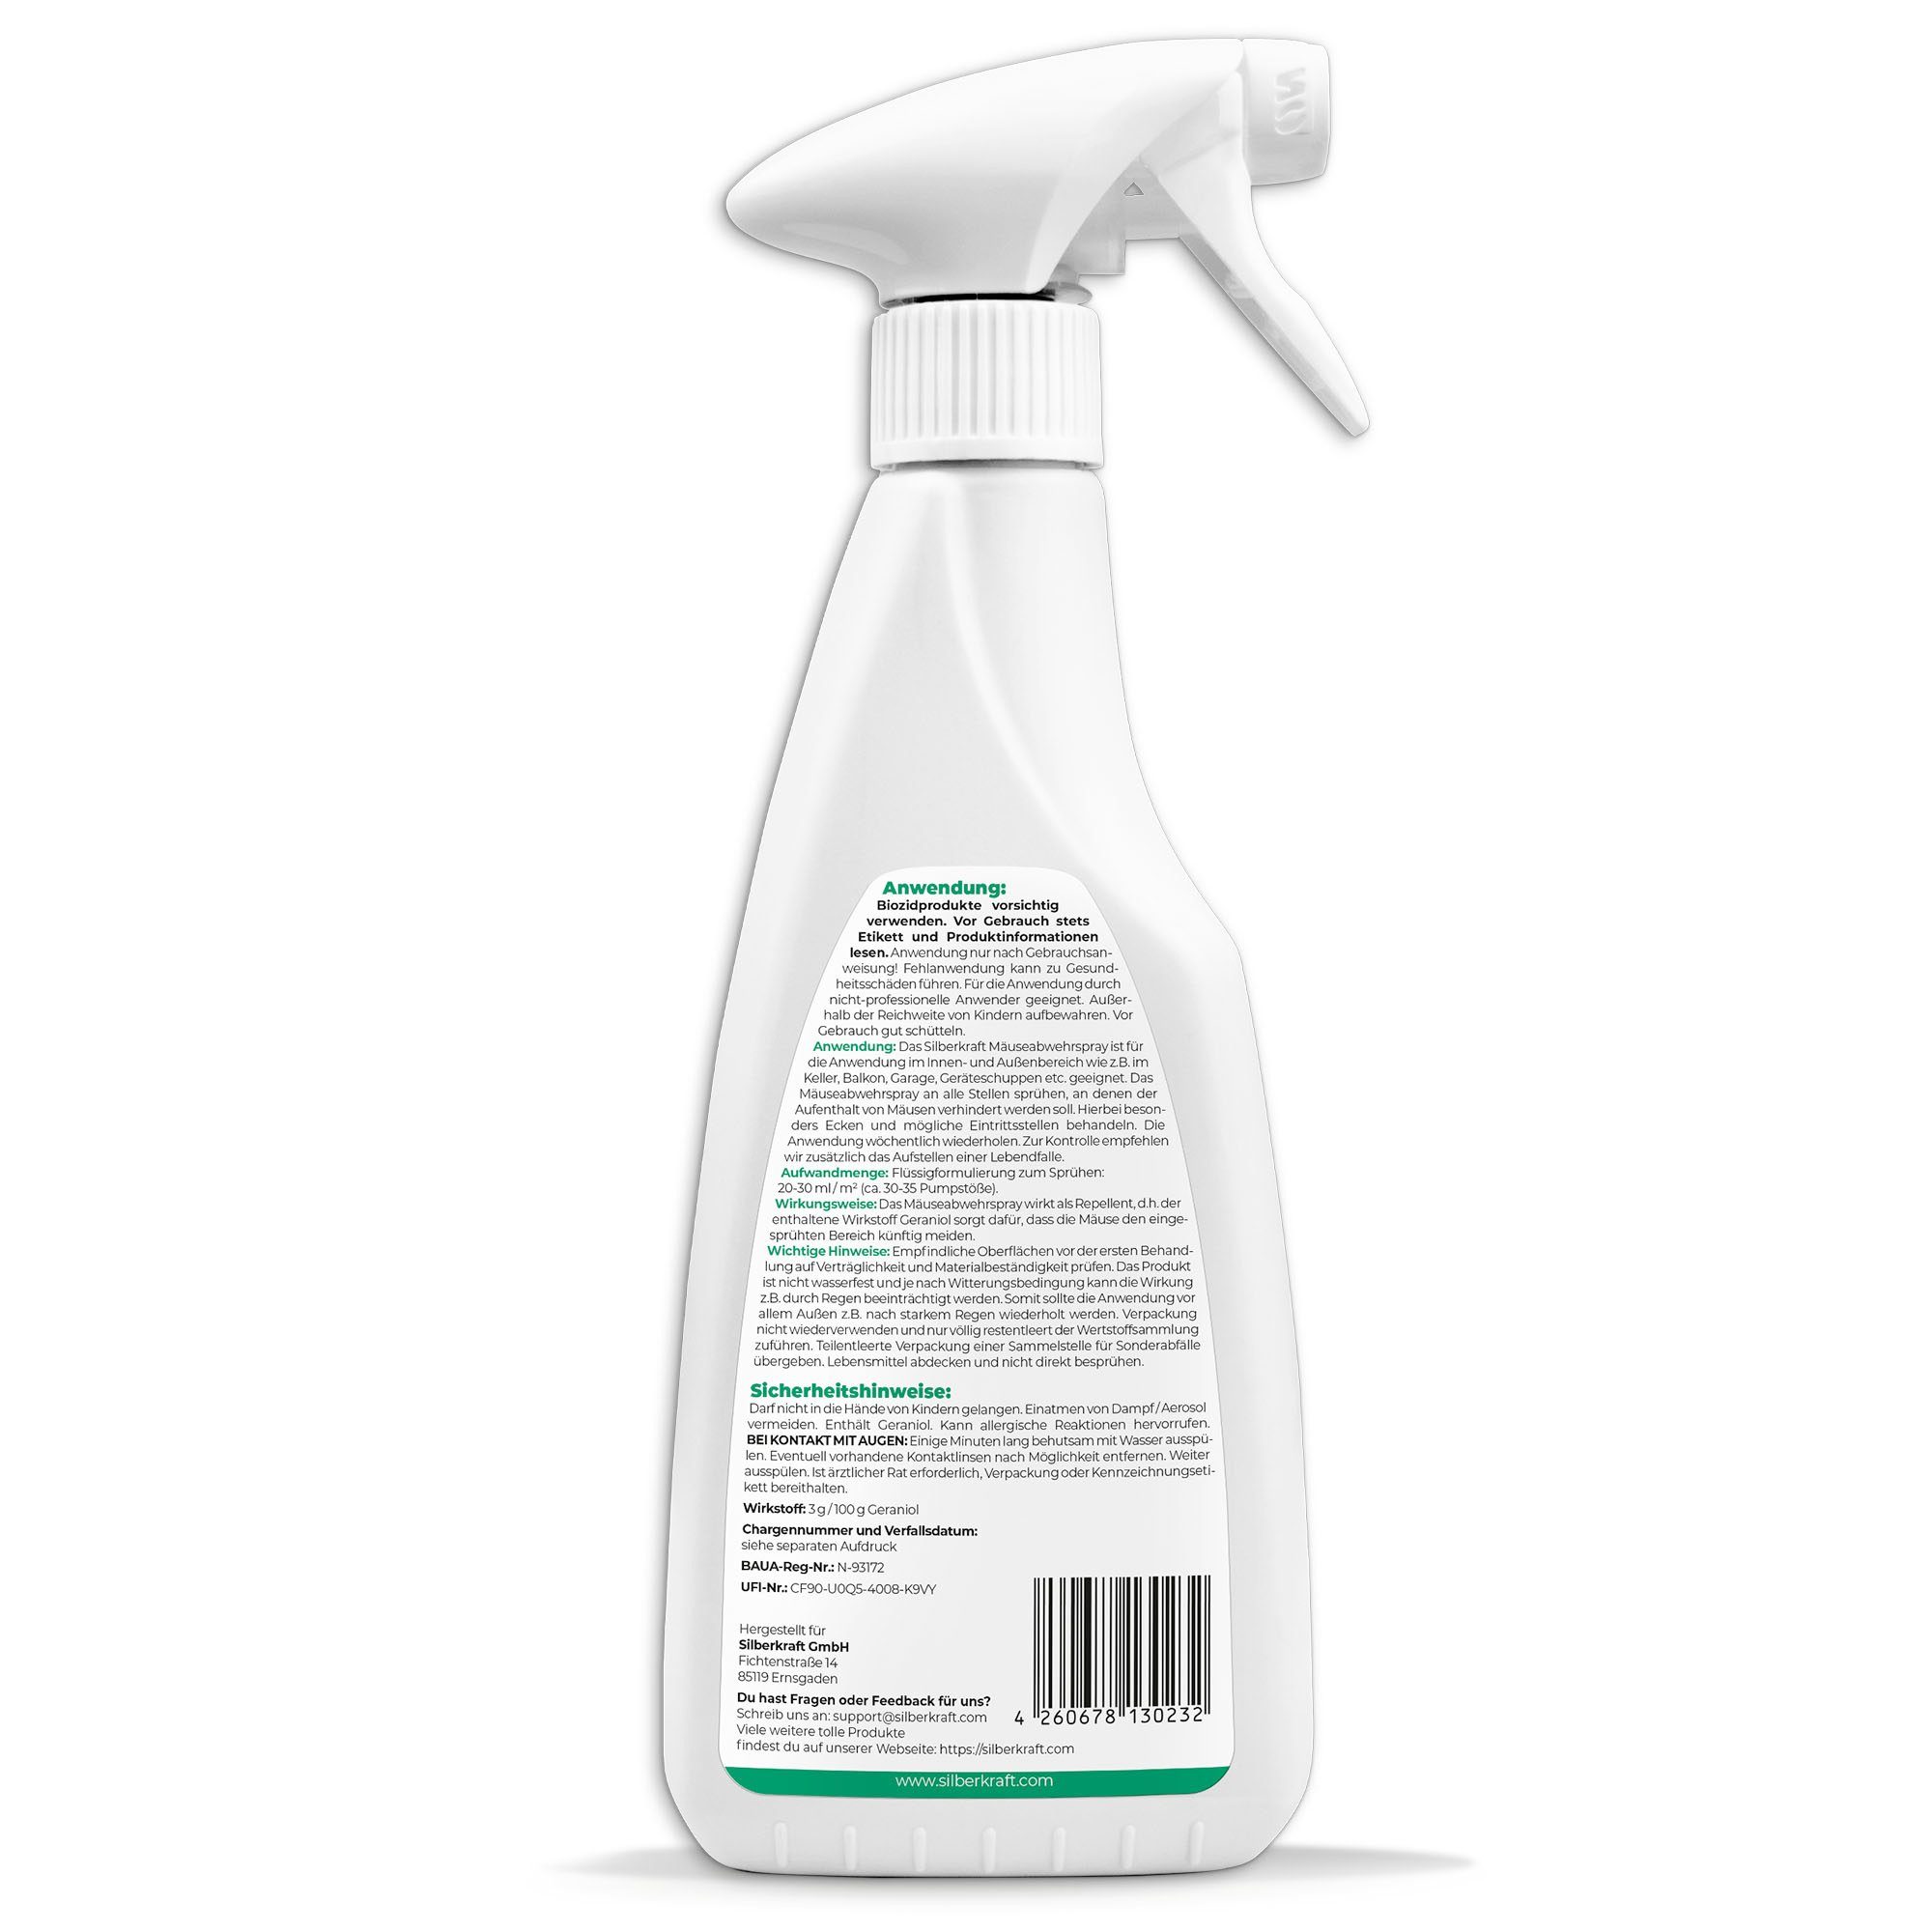 500 Mäuse-Abwehr-Spray, ml, 1-St. Silberkraft Insektenspray